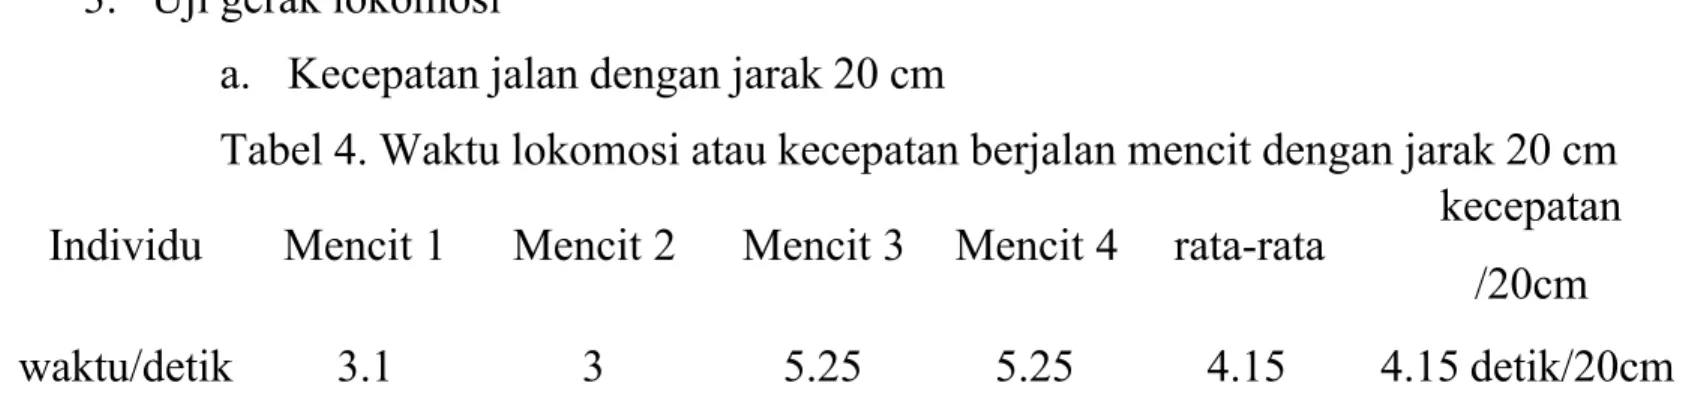 Tabel 4. Waktu lokomosi atau kecepatan berjalan mencit dengan jarak 20 cm Individu  Mencit 1  Mencit 2  Mencit 3  Mencit 4  rata-rata kecepatan